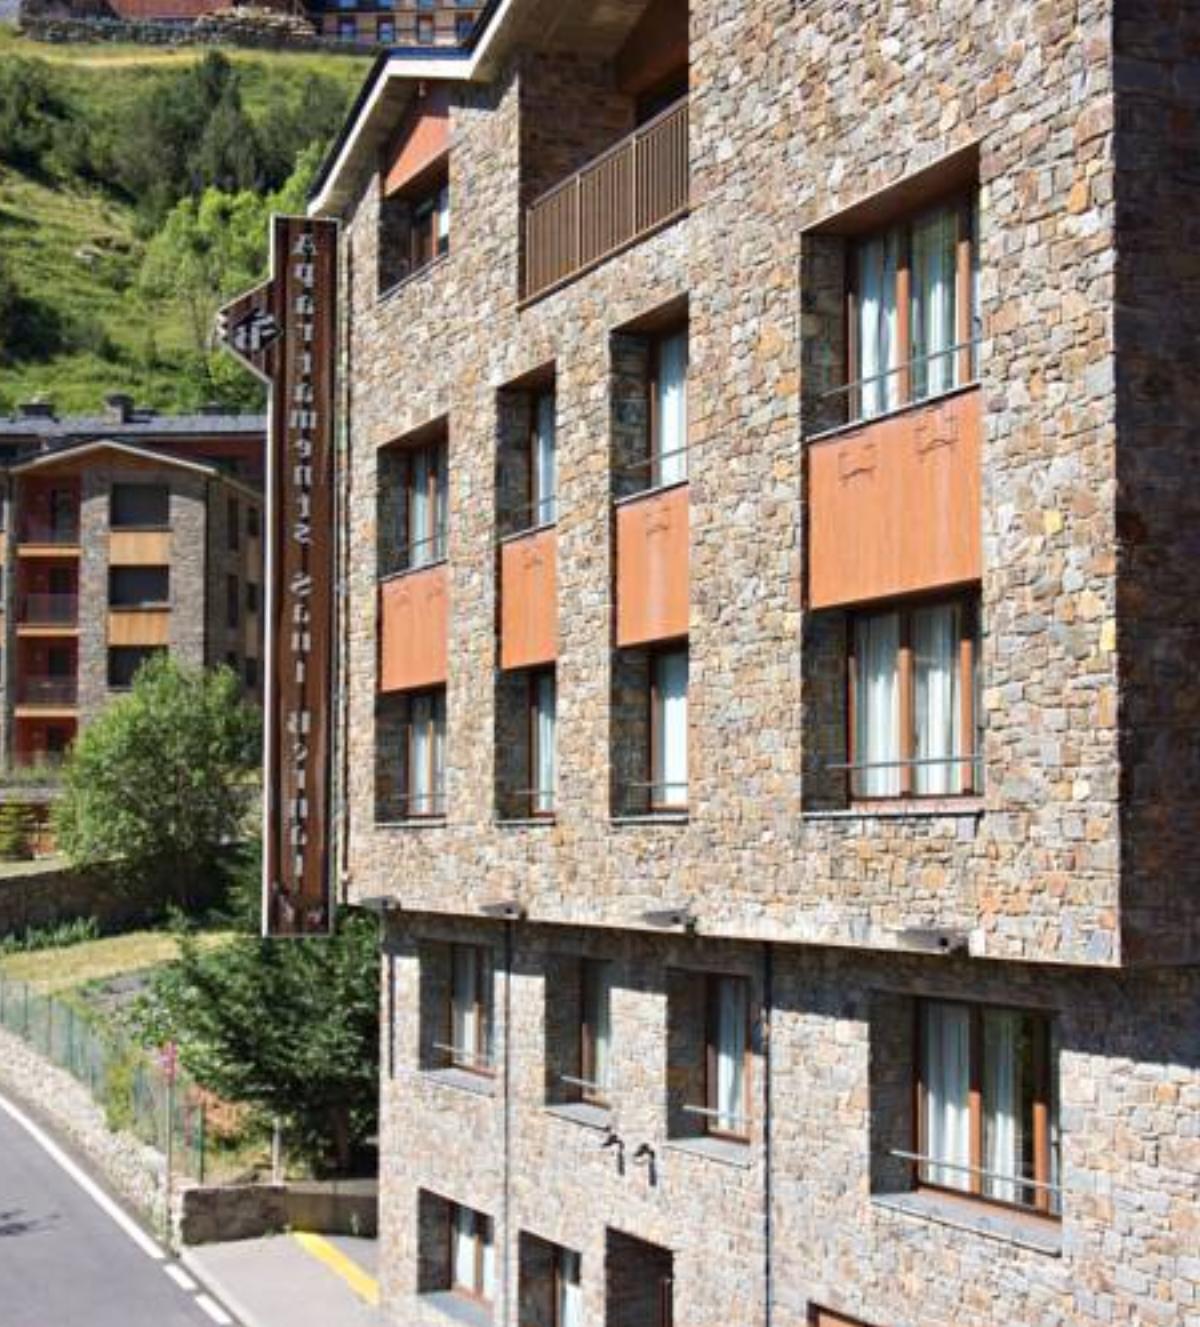 Apartaments Sant Bernat Hotel Canillo Andorra